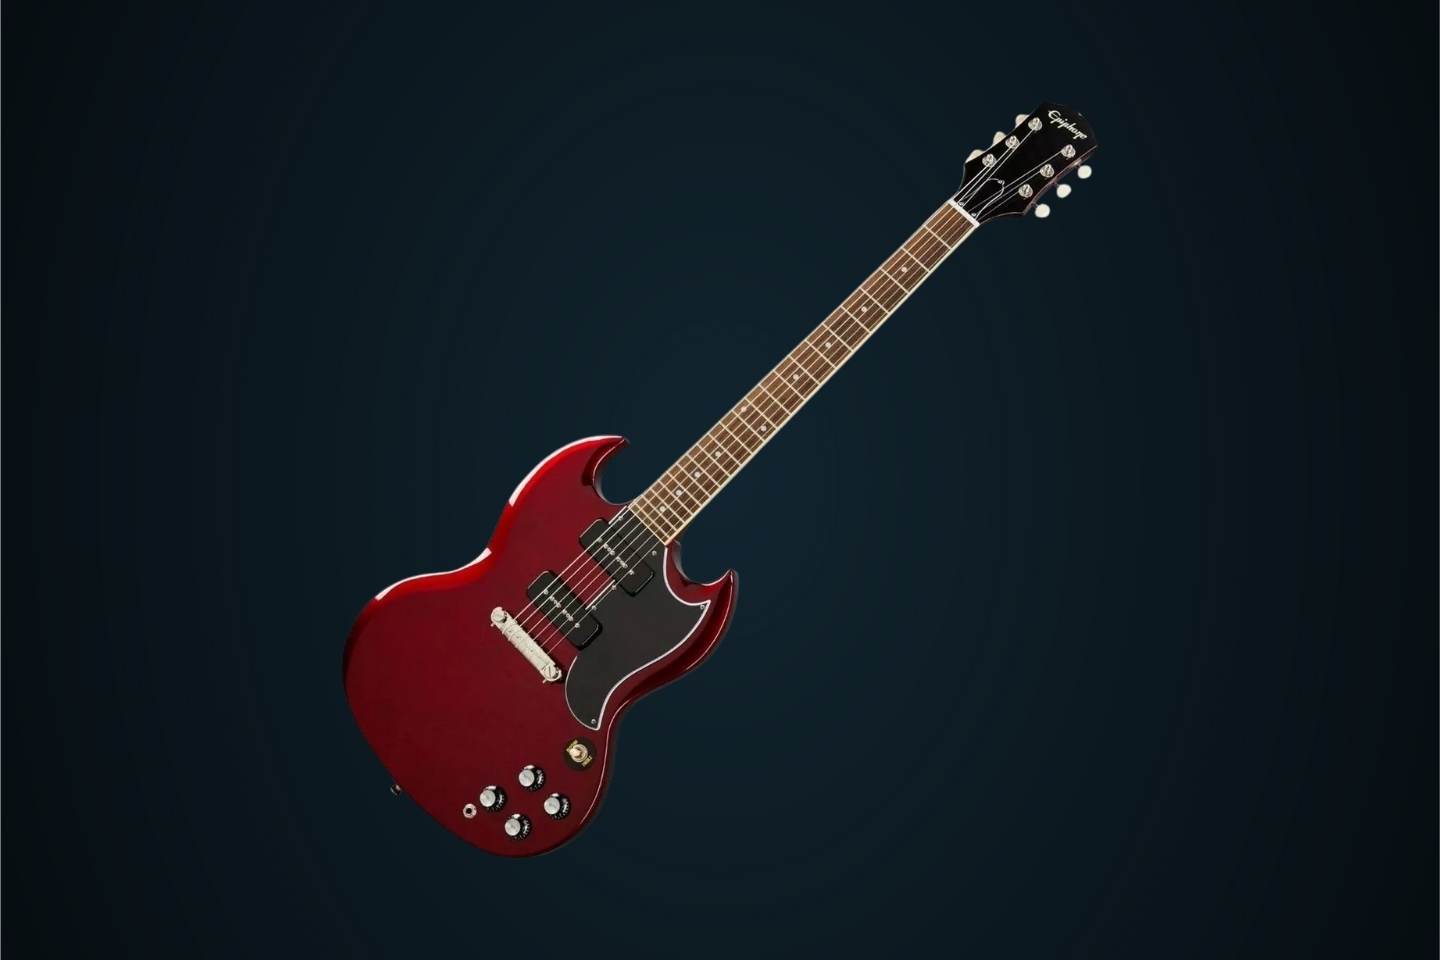 Guitarra elétrica Epiphone Inspired by Gibson SG Special P-90 de mogno sparkling burgundy brilhante com diapasão de louro indiano